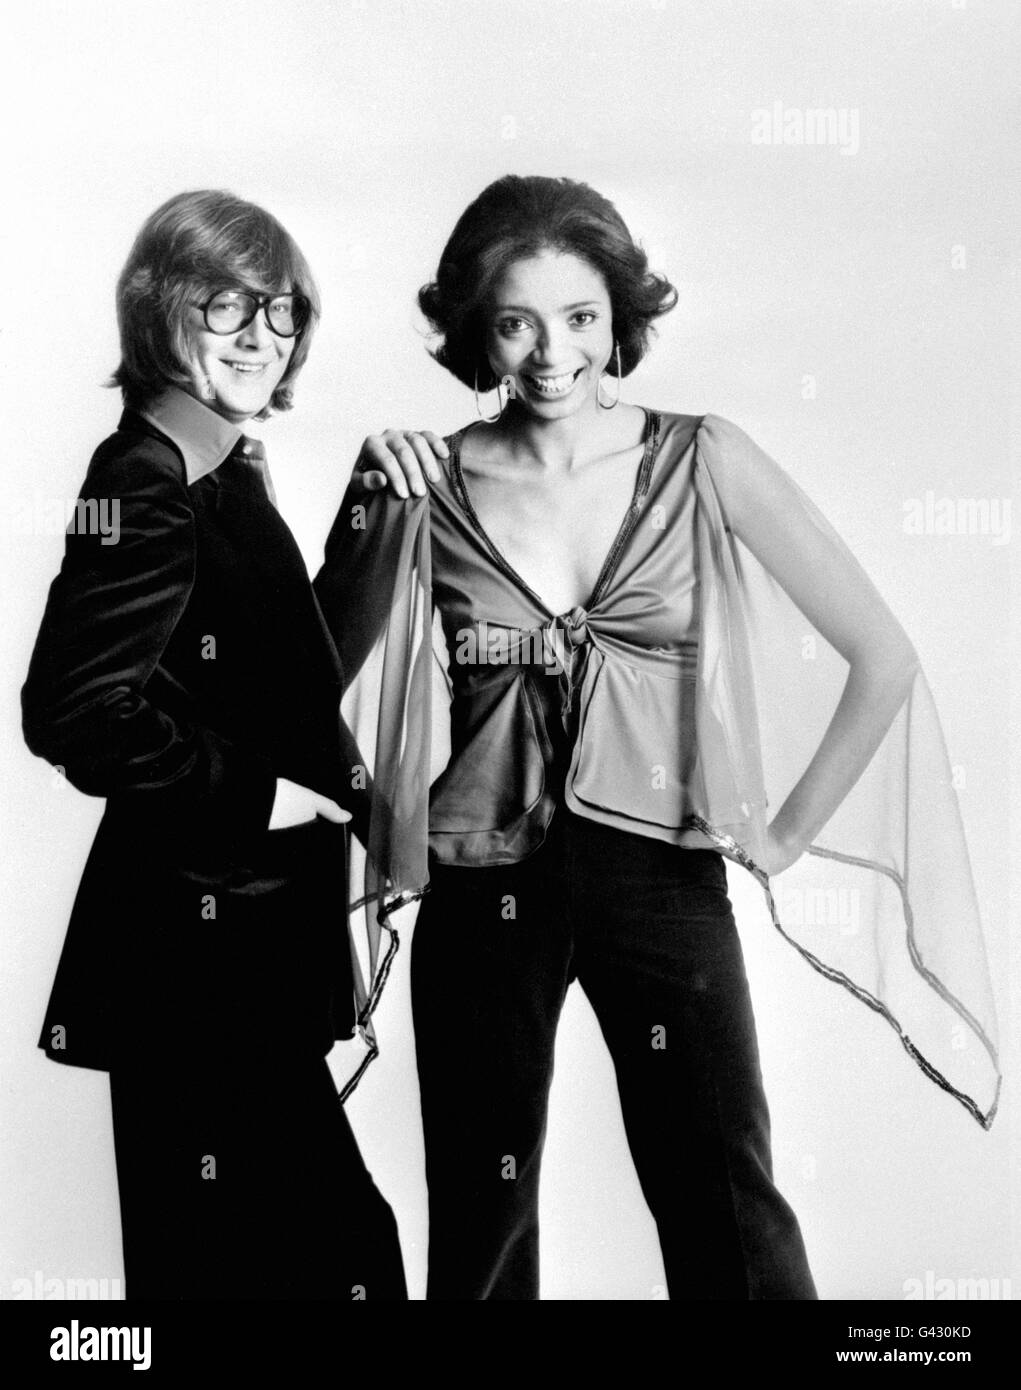 Russell Stone e sua moglie Joanne, conosciuta come R&J Stone, che hanno completato un tour di vendita a supporto di Frankie Valli e delle Four Seasons Foto Stock